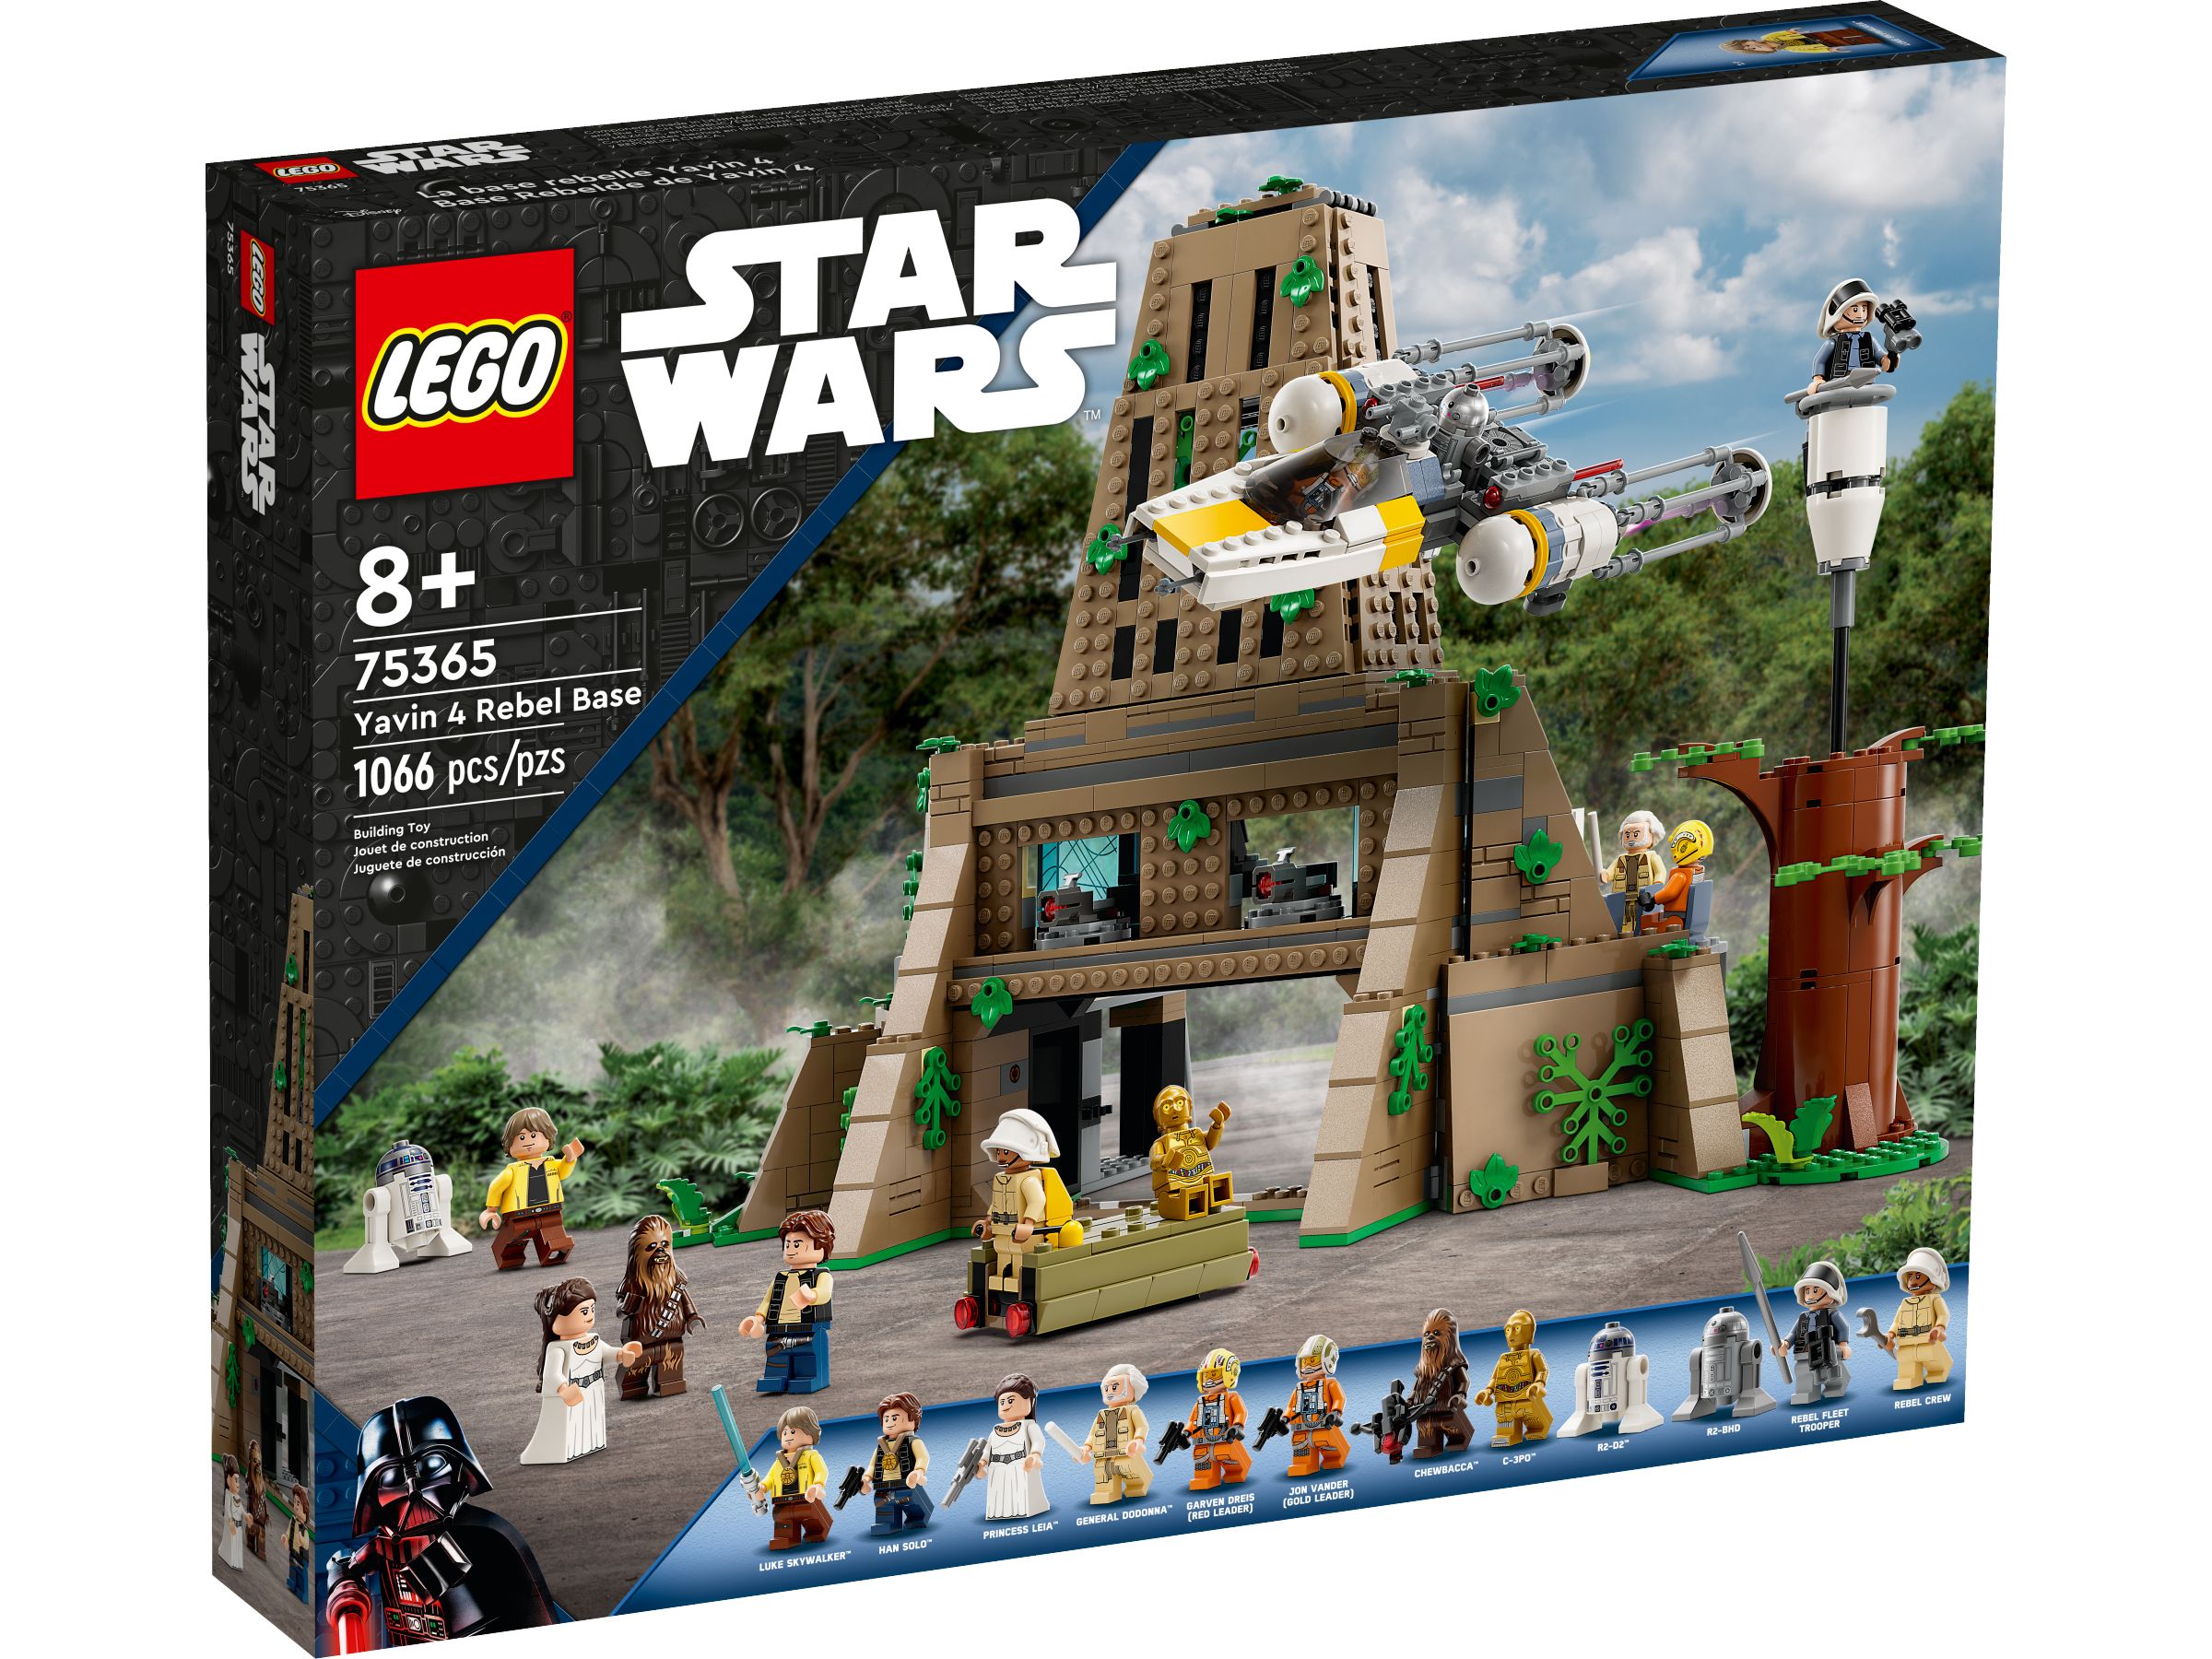 LEGO Star Wars 75365 Rebellenbasis auf Yavin 4 LEGO_75365_Box1_v39.jpg